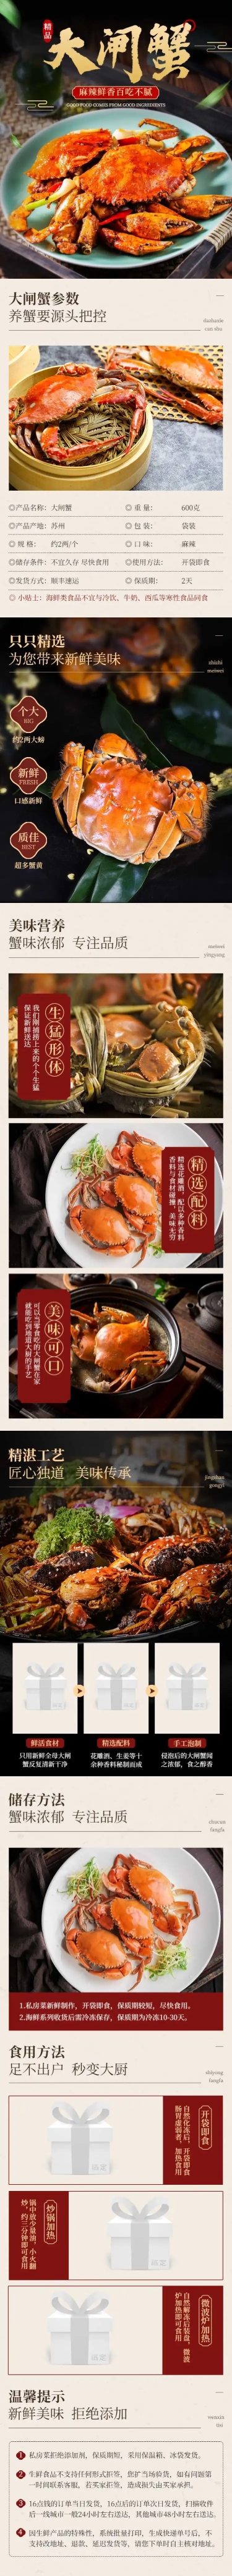 食品生鲜海鲜螃蟹大闸蟹详情页预览效果